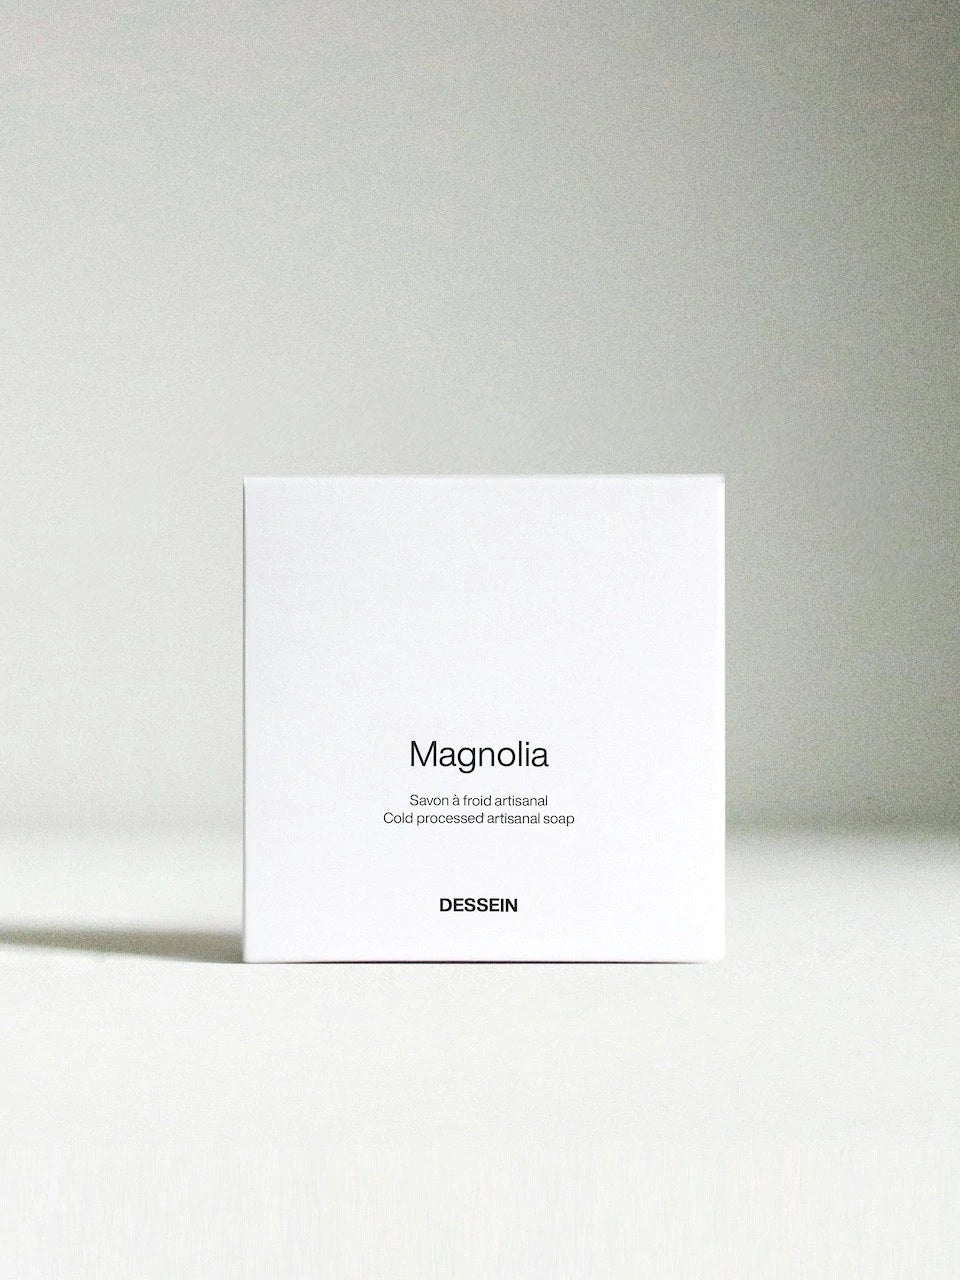 magnolia-dessein-cold-processed-artisanal-soap-01